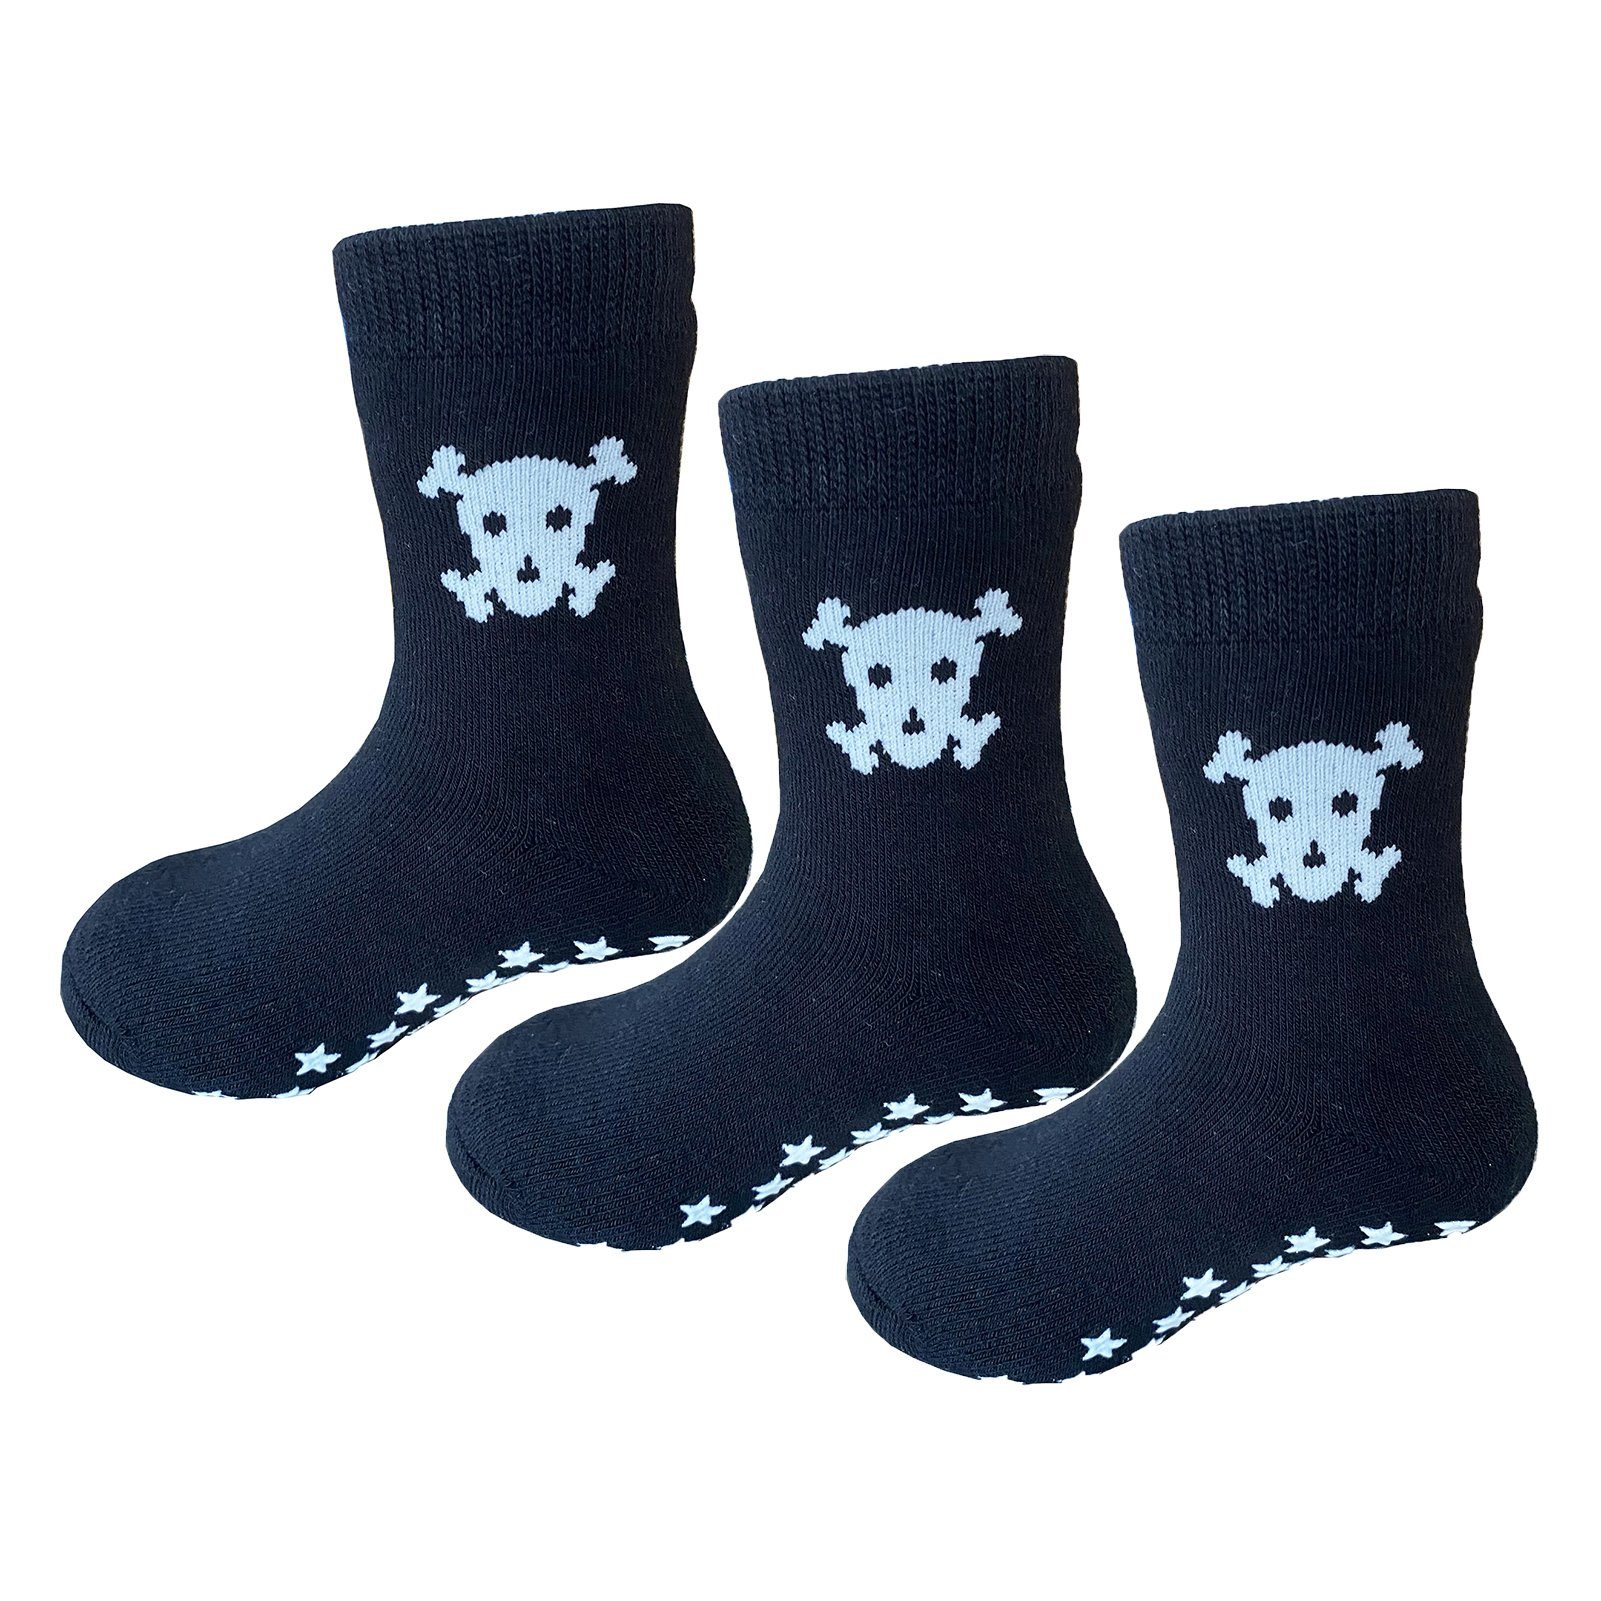 Yalion Langsocken Kinder Baby socken (3 Paar) Anti Rutsch Socken für Jungen Mädchen (Beutel)